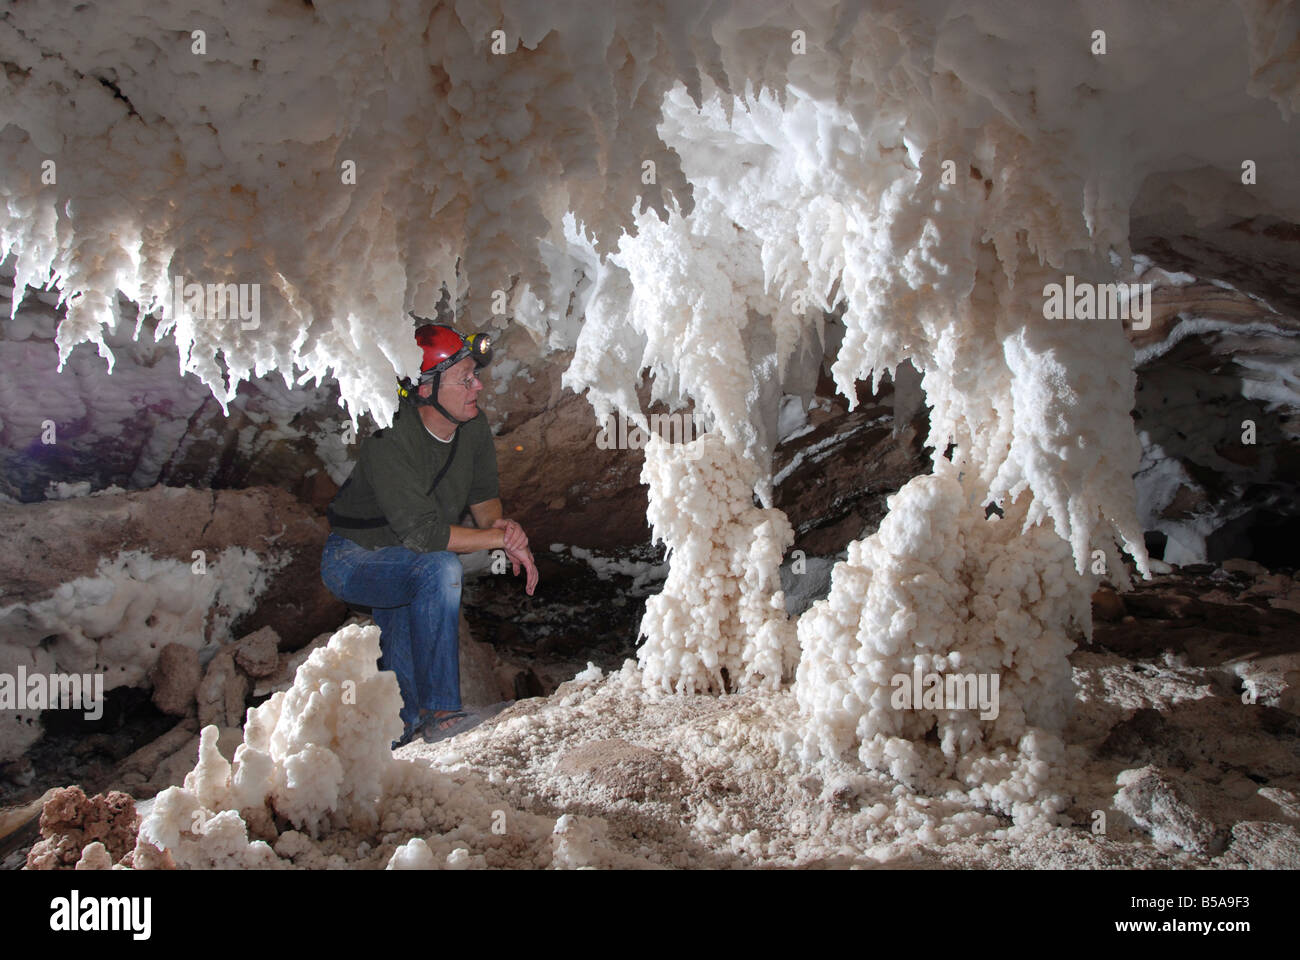 Le sel stalactites et stalagmites dans la grotte de sel de l'île de Qeshm Namakdan dome du sud de l'Iran Moyen-orient Banque D'Images